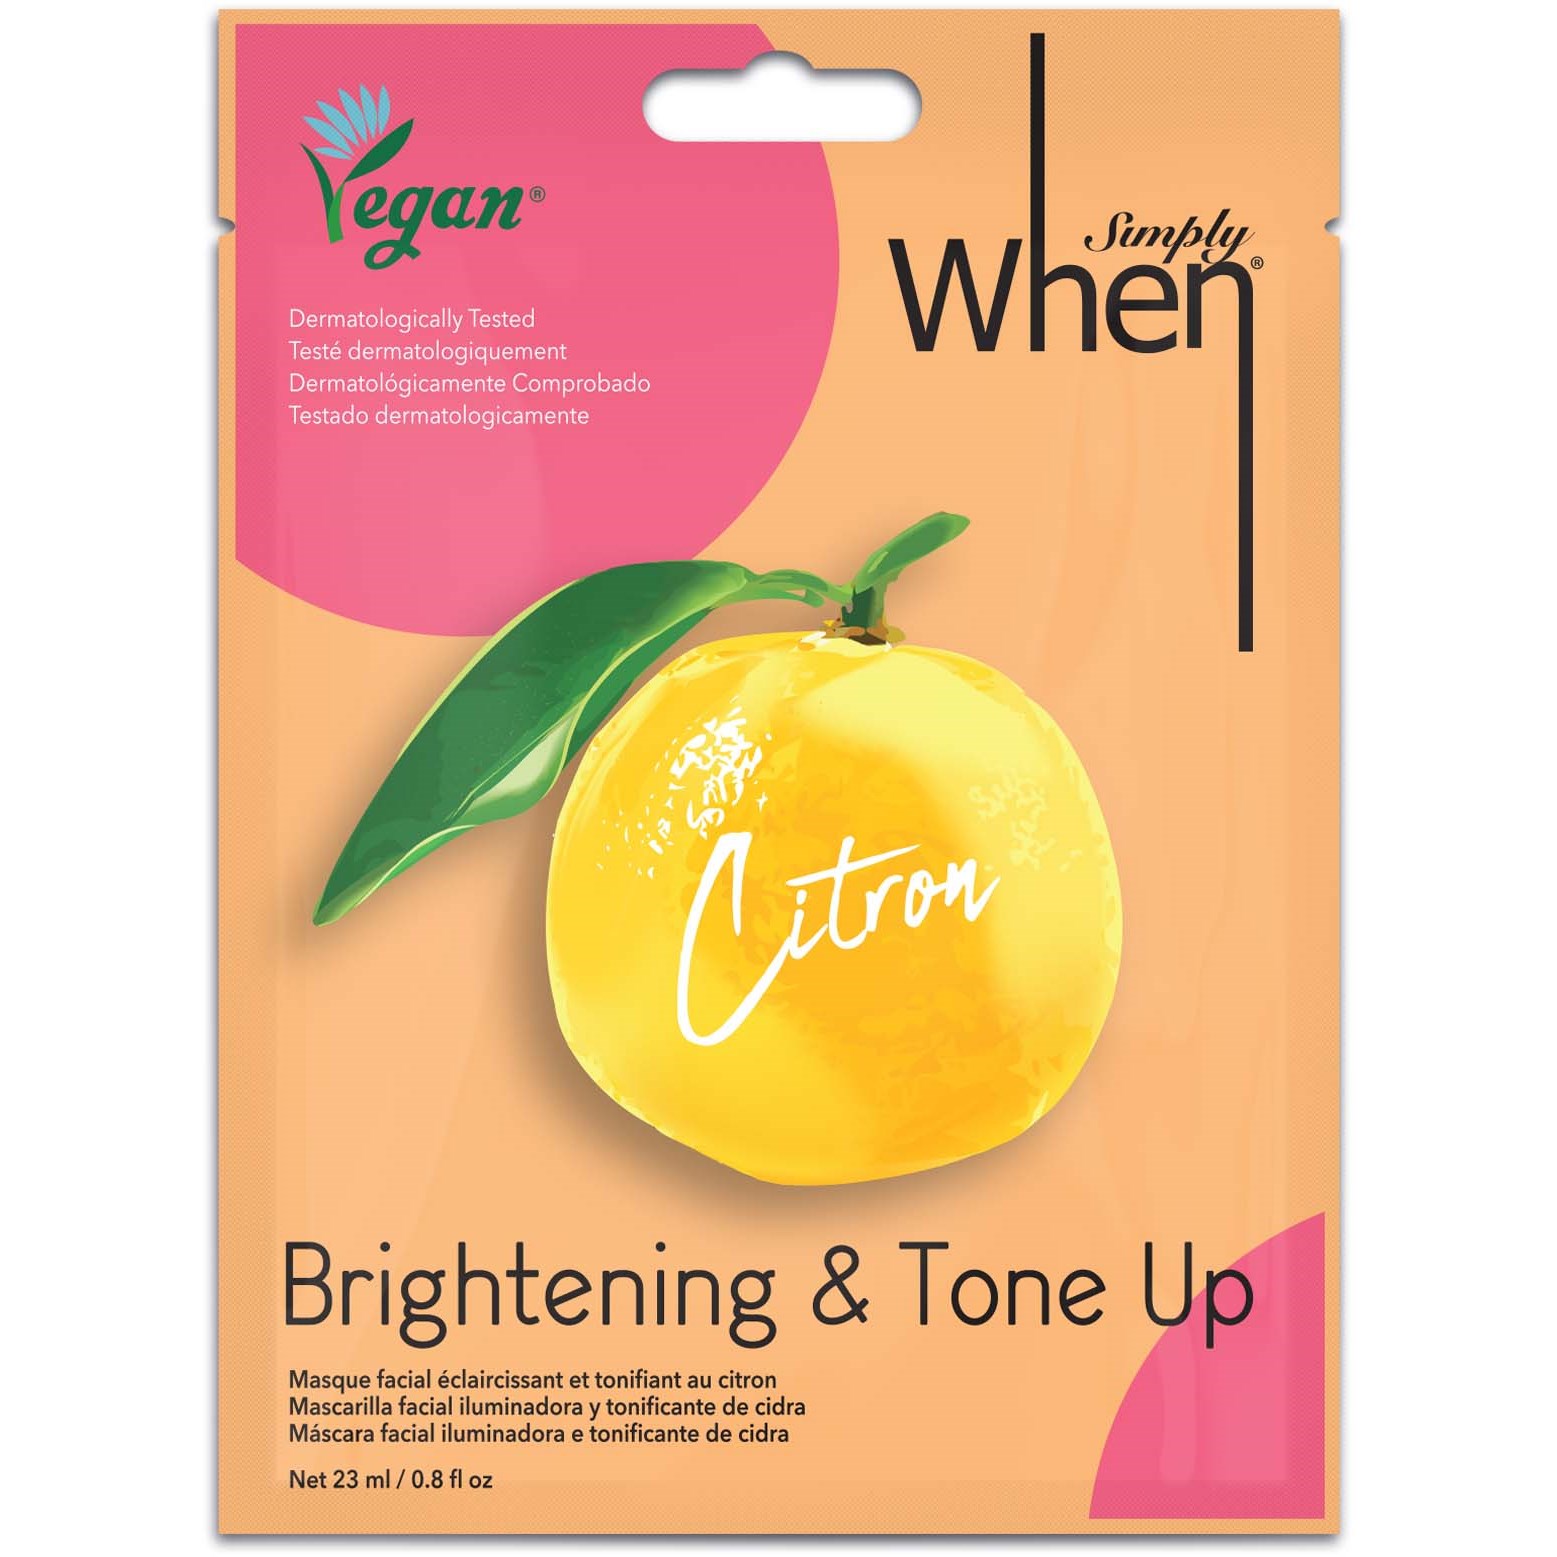 Läs mer om When Vegan Citron Brightening & Tone Up Mask